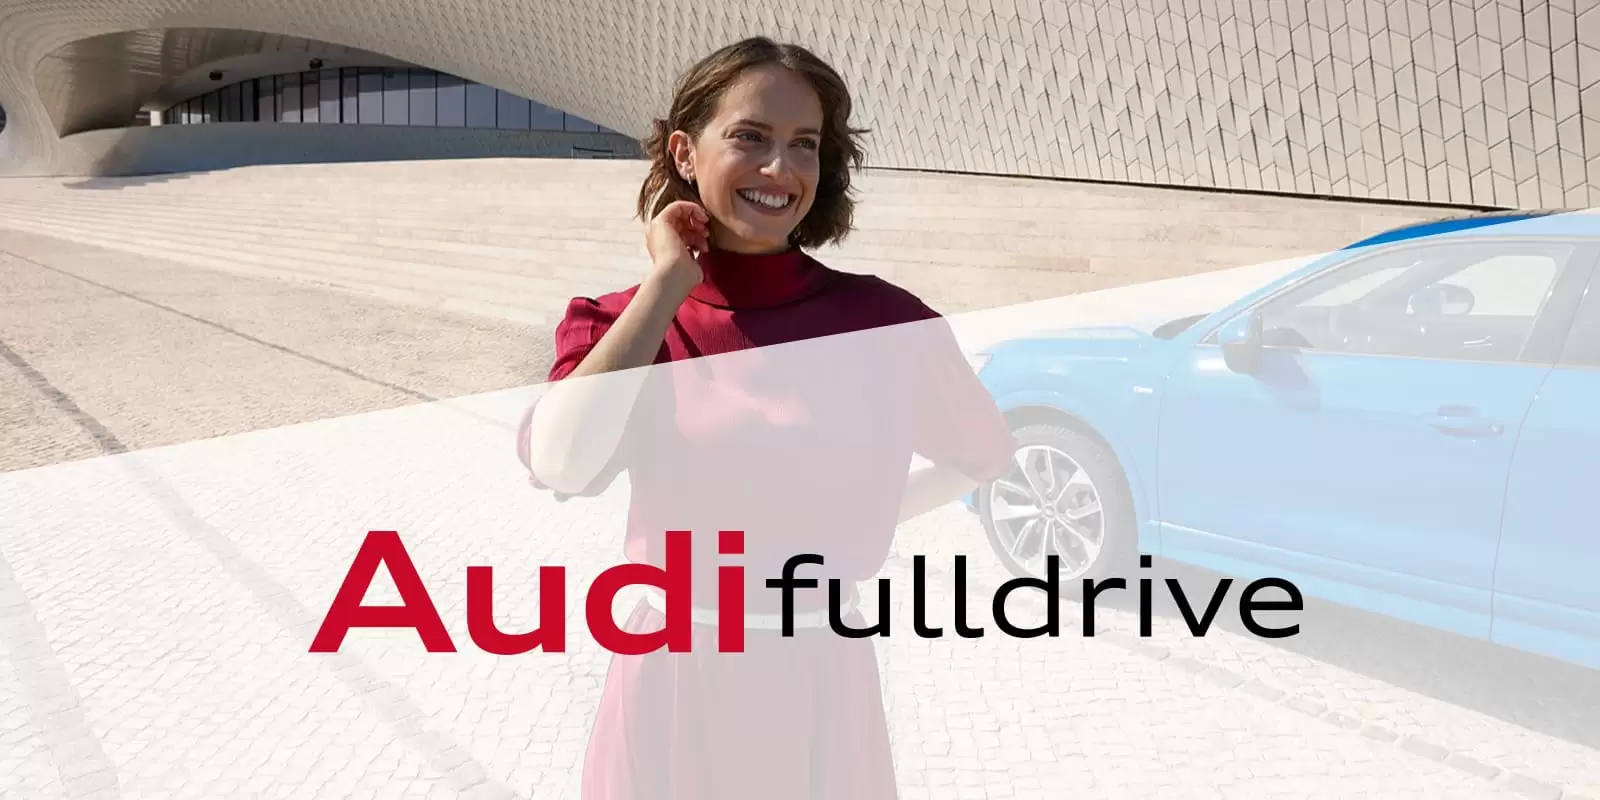 Una chica sonriendo delante de un Audi con el logo de Audi fulldrive